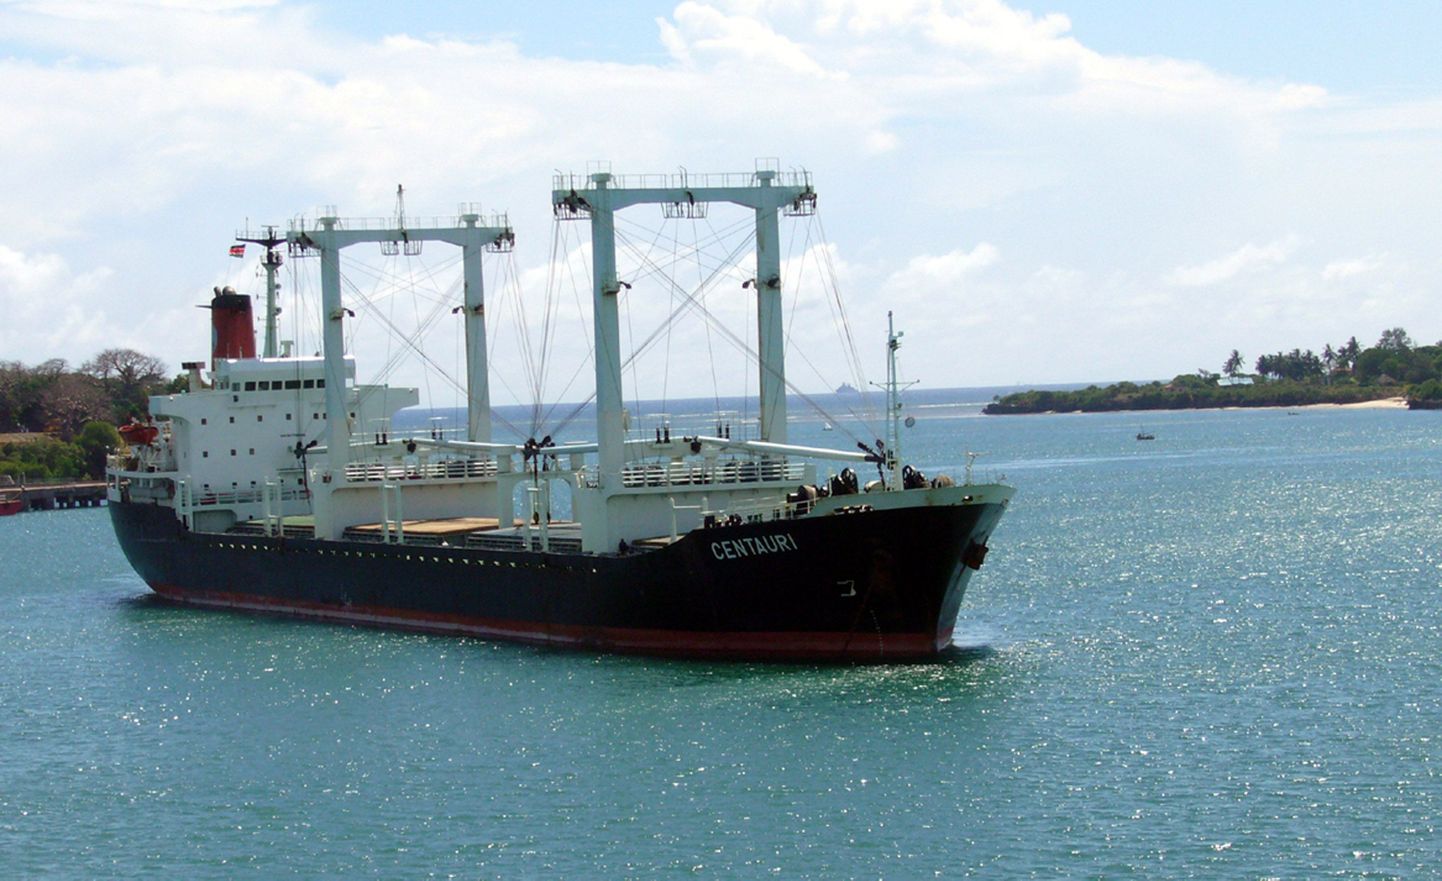 Viimastel nädalatel on Somaalia piraadid vabastanud mitu Kreeka kaubalaeva. Pildil üleeemisel nädalal vabastatud Kreeka kaubalaev MV Centauri.